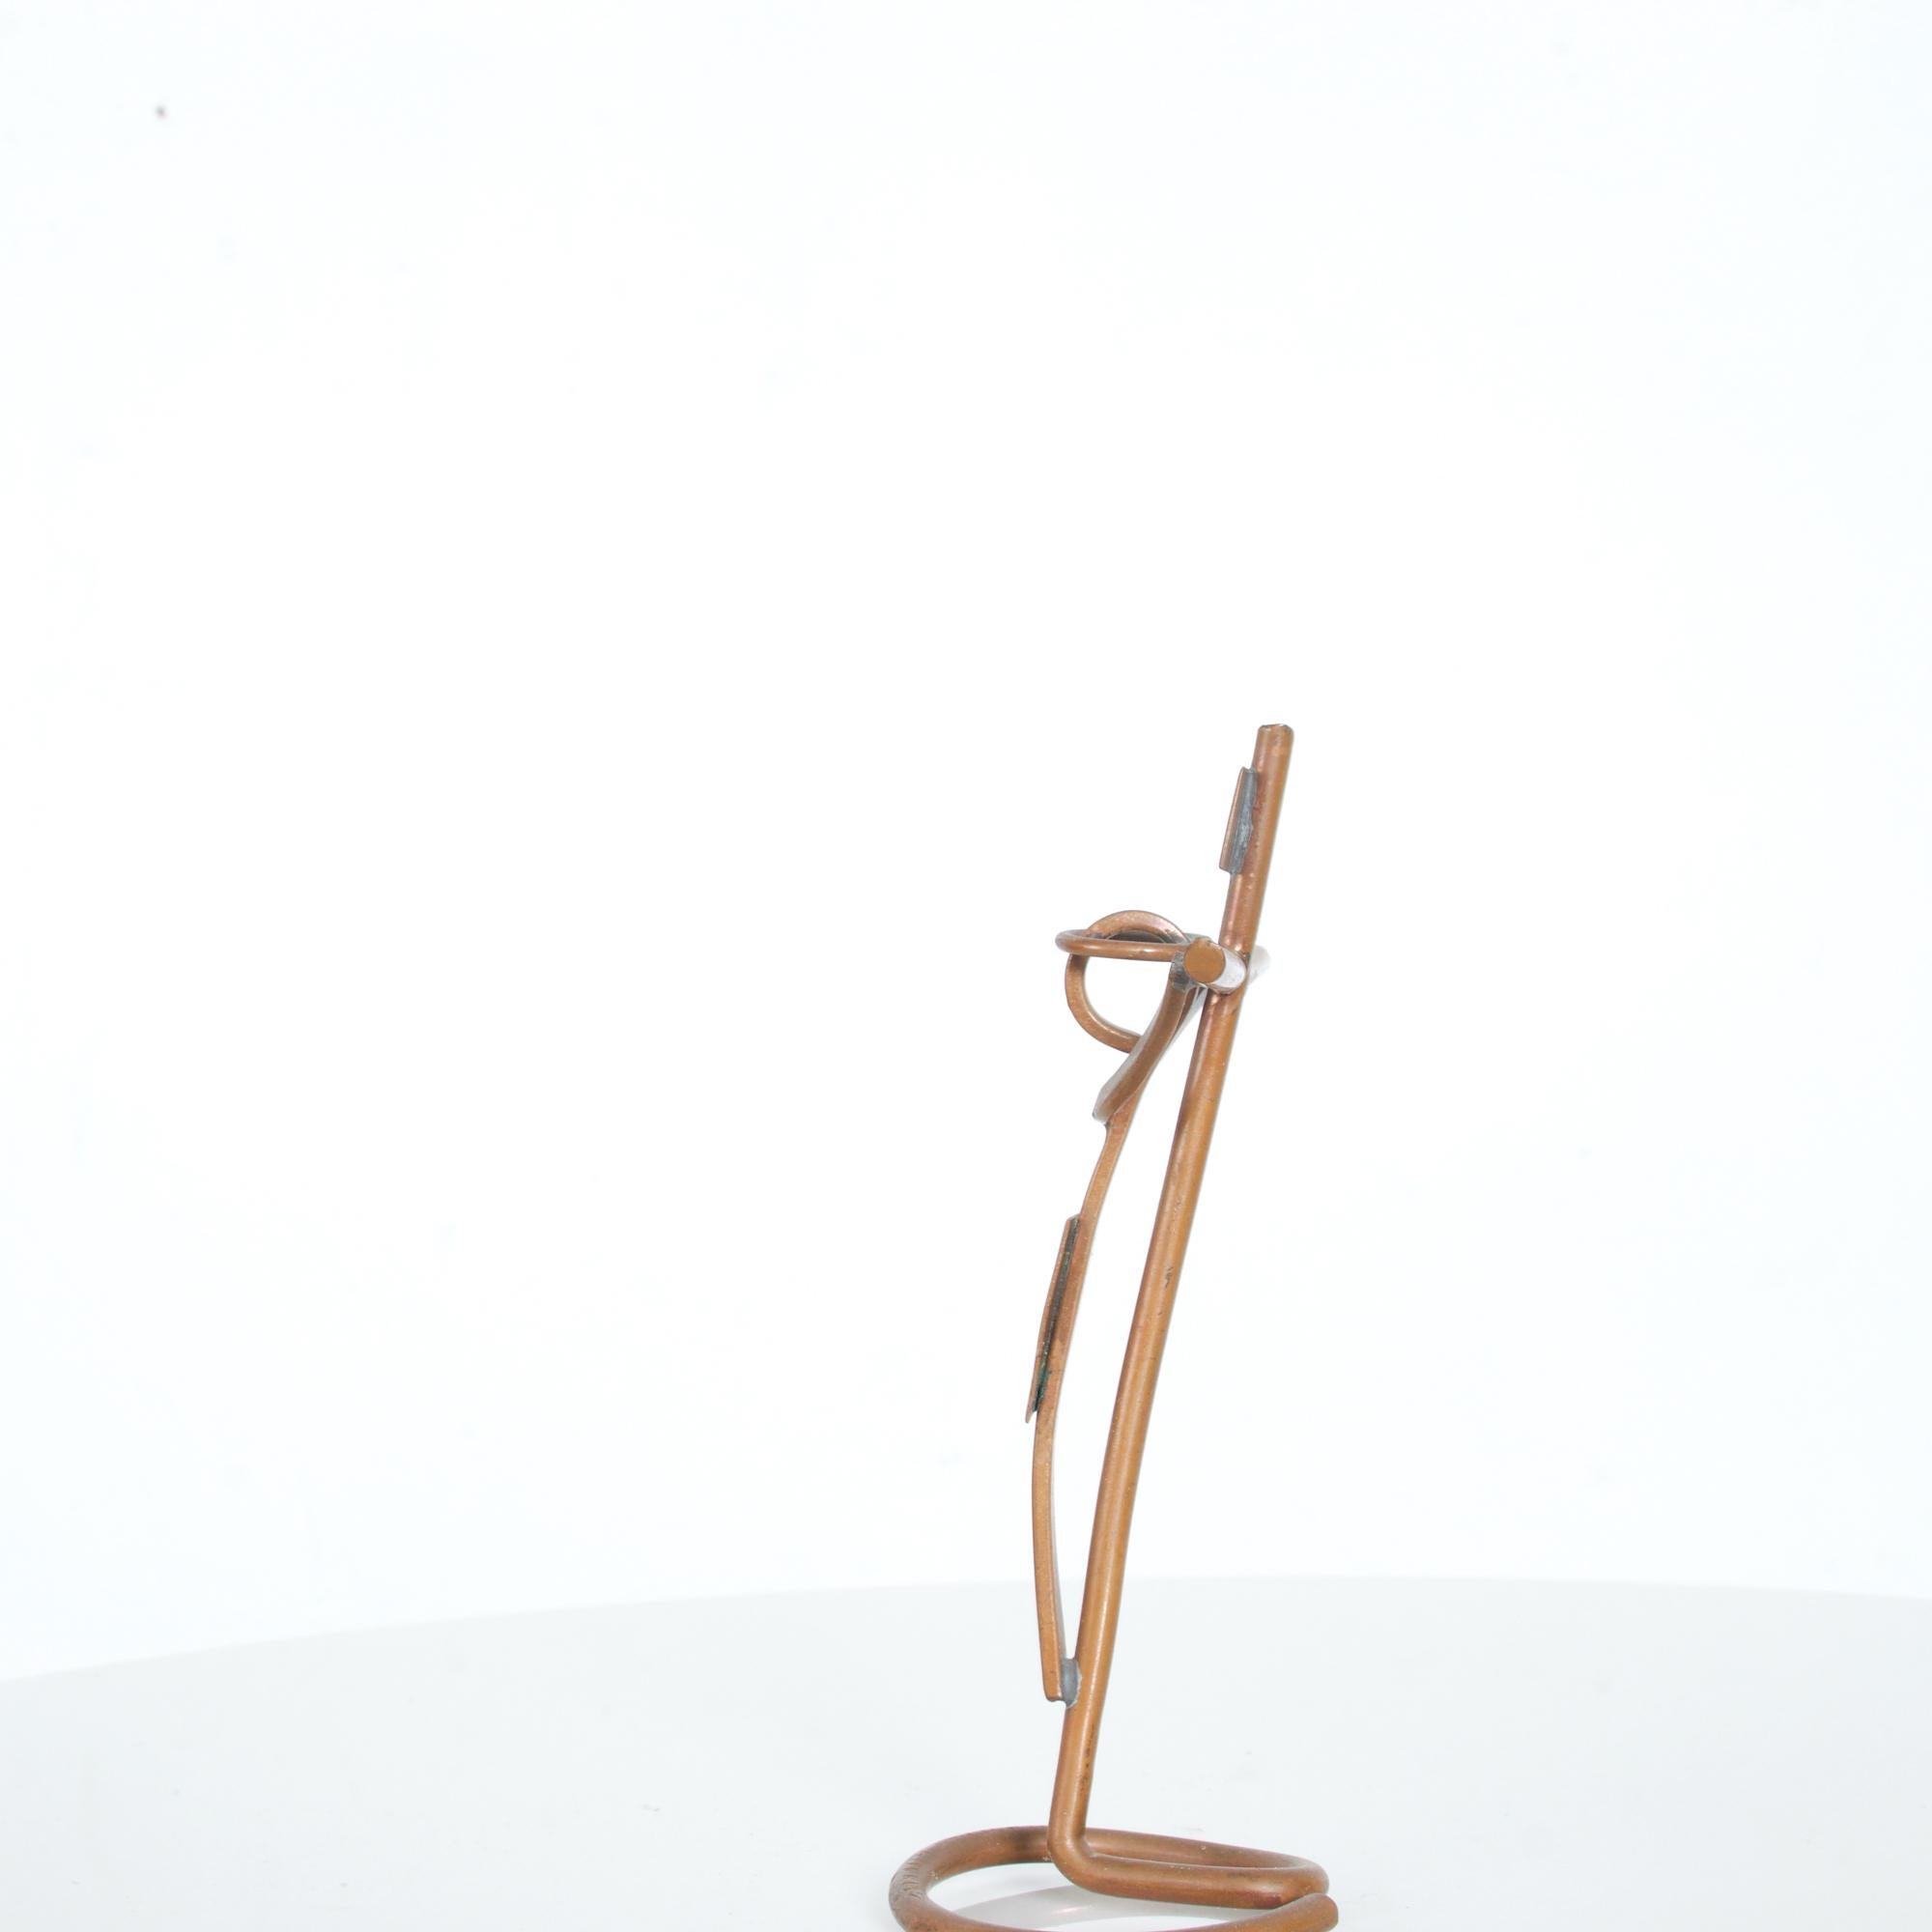 Mathias Goeritz Abstract Prayer Sculptural Crucifix Cross Copper & Silver 1